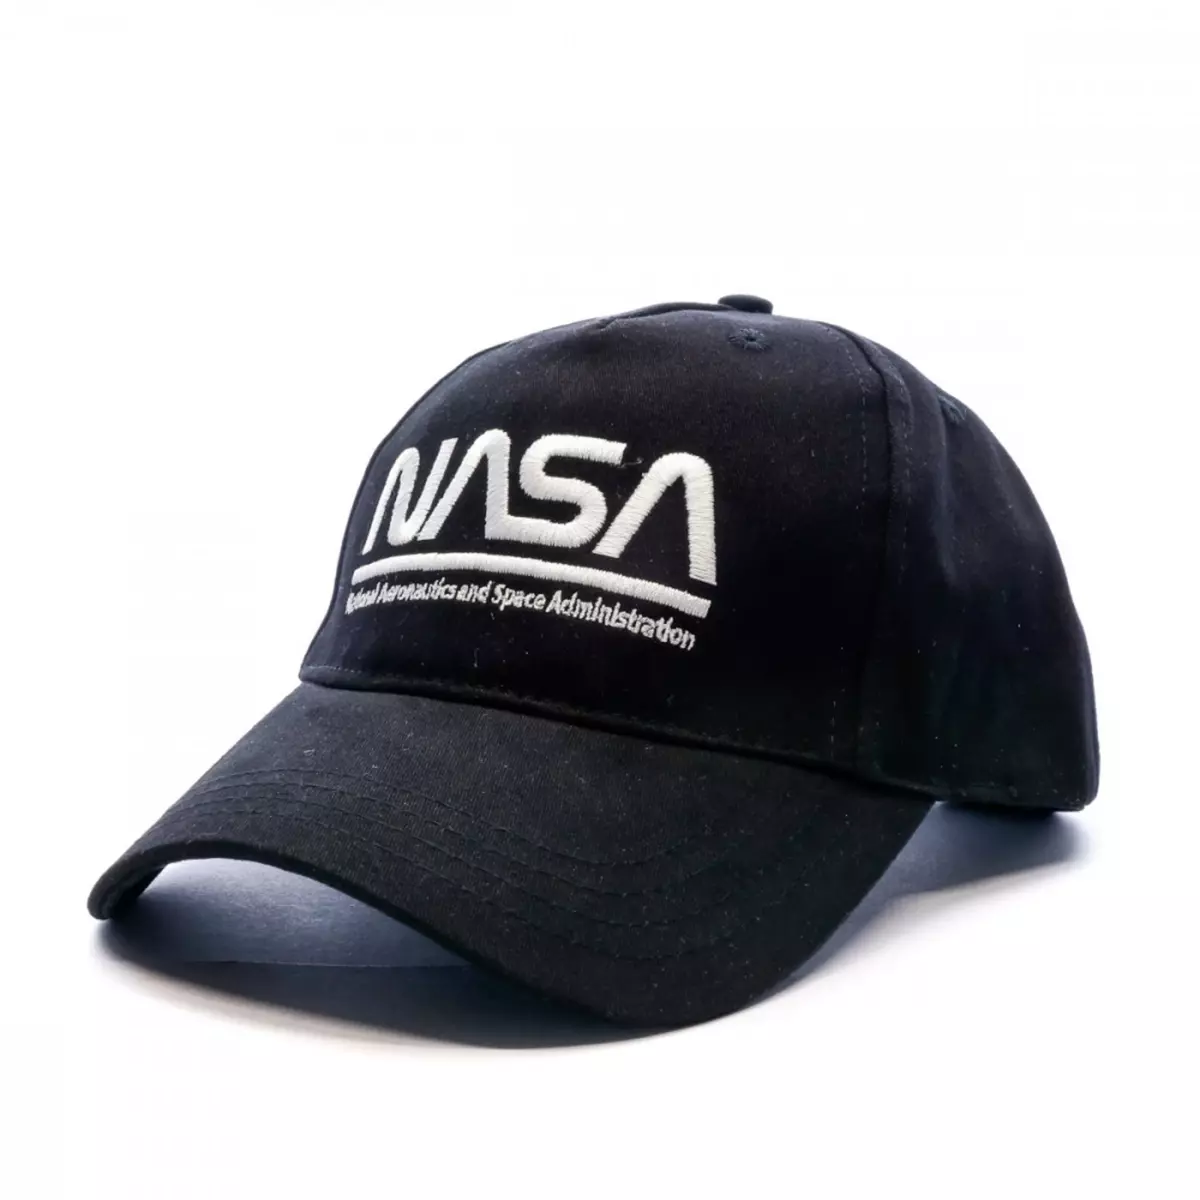 NASA Casquette Noir Homme Nasa 32C